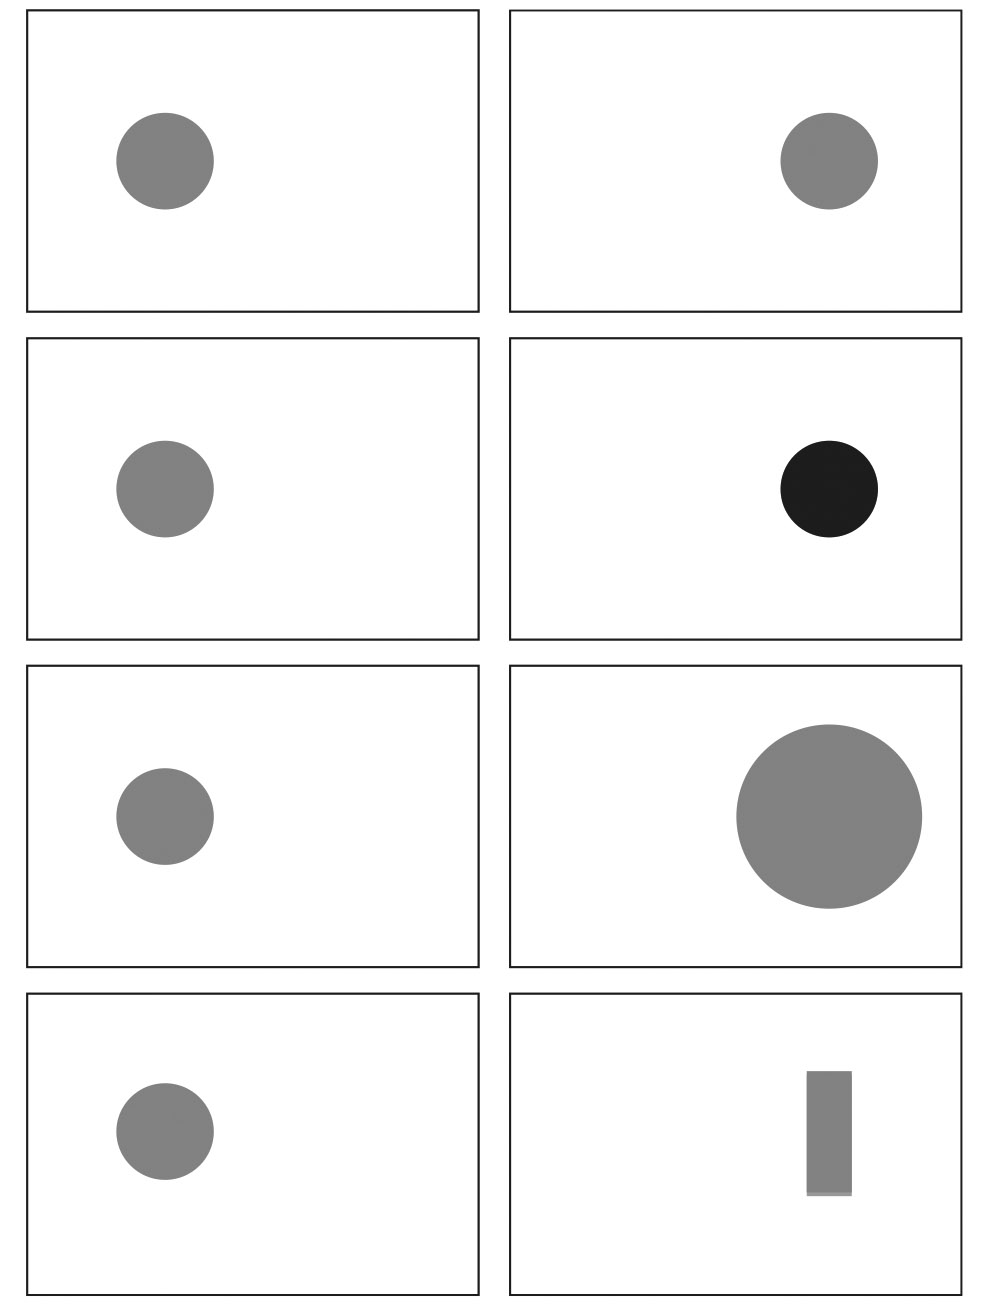 6. ábra: Béta-mozgás. Mindegyik képpár esetében mozgási illúzió keletkezik, ha a baloldalit felcseréljük a jobbal. A legfelső képpárnál úgy tűnik, mintha a kör ide-oda ugrálna. A többinél a tárgy mintha megváltoztatná az árnyalatát, méretét és alakját moz